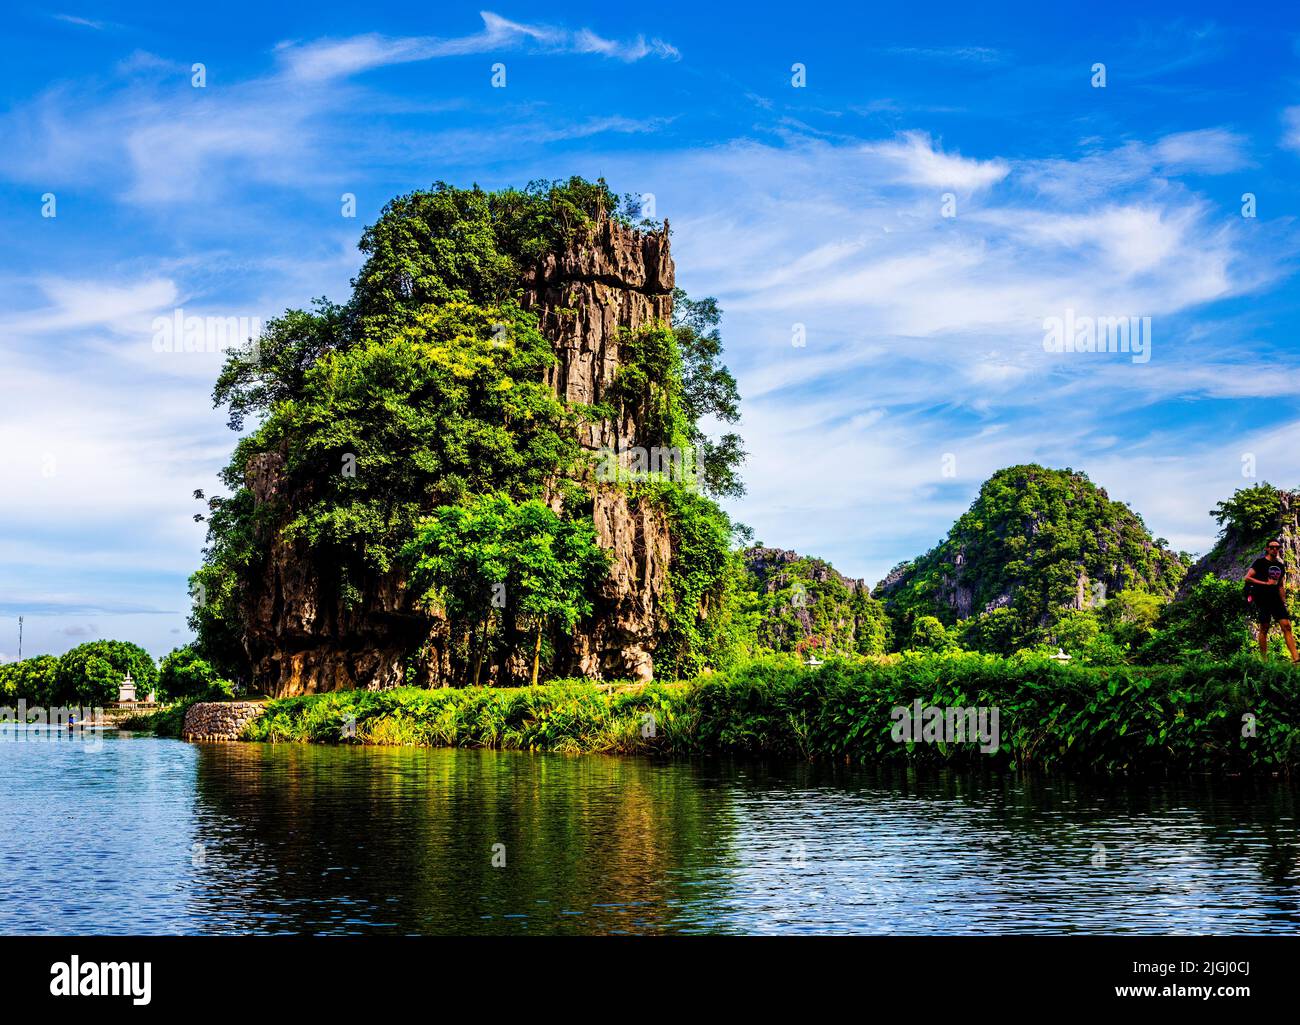 Kalksteinfelsen, umgeben von Wasser, blauem Himmel und grüner Dschungelvegetation, begeistern die Touristen. Stockfoto